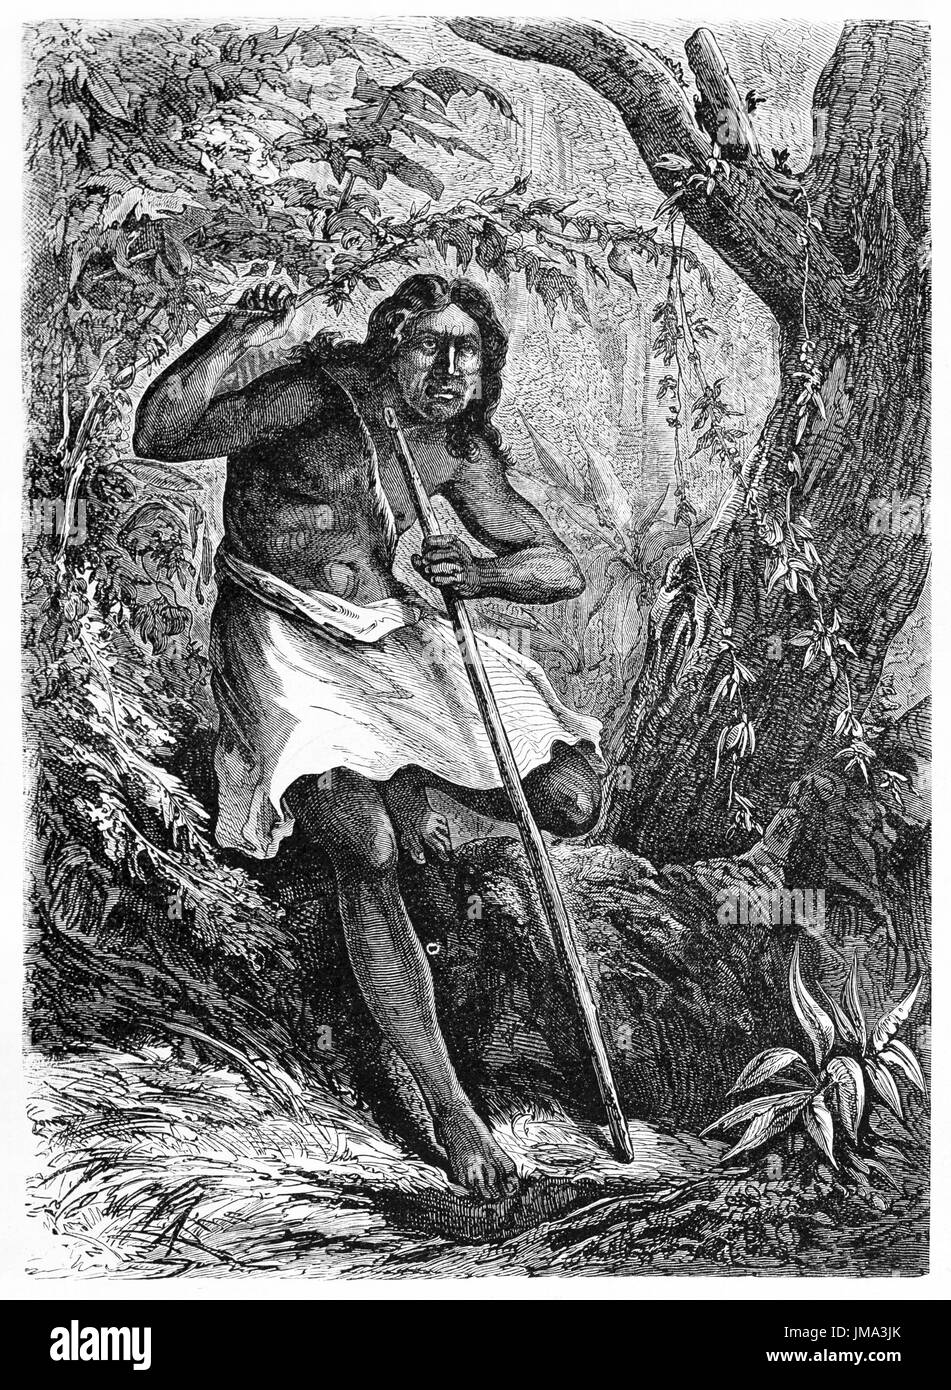 Ancien portrait gravé de Machicuy, natif d'Amazonas. Créé par Pelcoq et Sargent après Demersay, publié sur le Tour du Monde, Paris, 1861 Banque D'Images